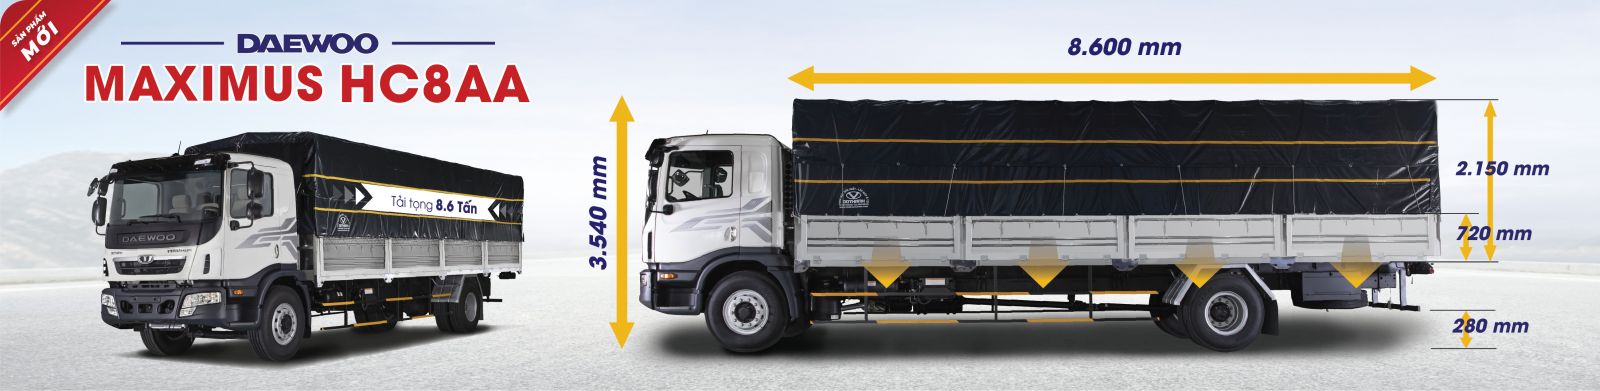 Xe Daewoo HC8AA tải trọng 8.6 tấn. Kích thước lòng thùng dài 8.6m, rộng 2.36m, hông xe có thể gập xuống.